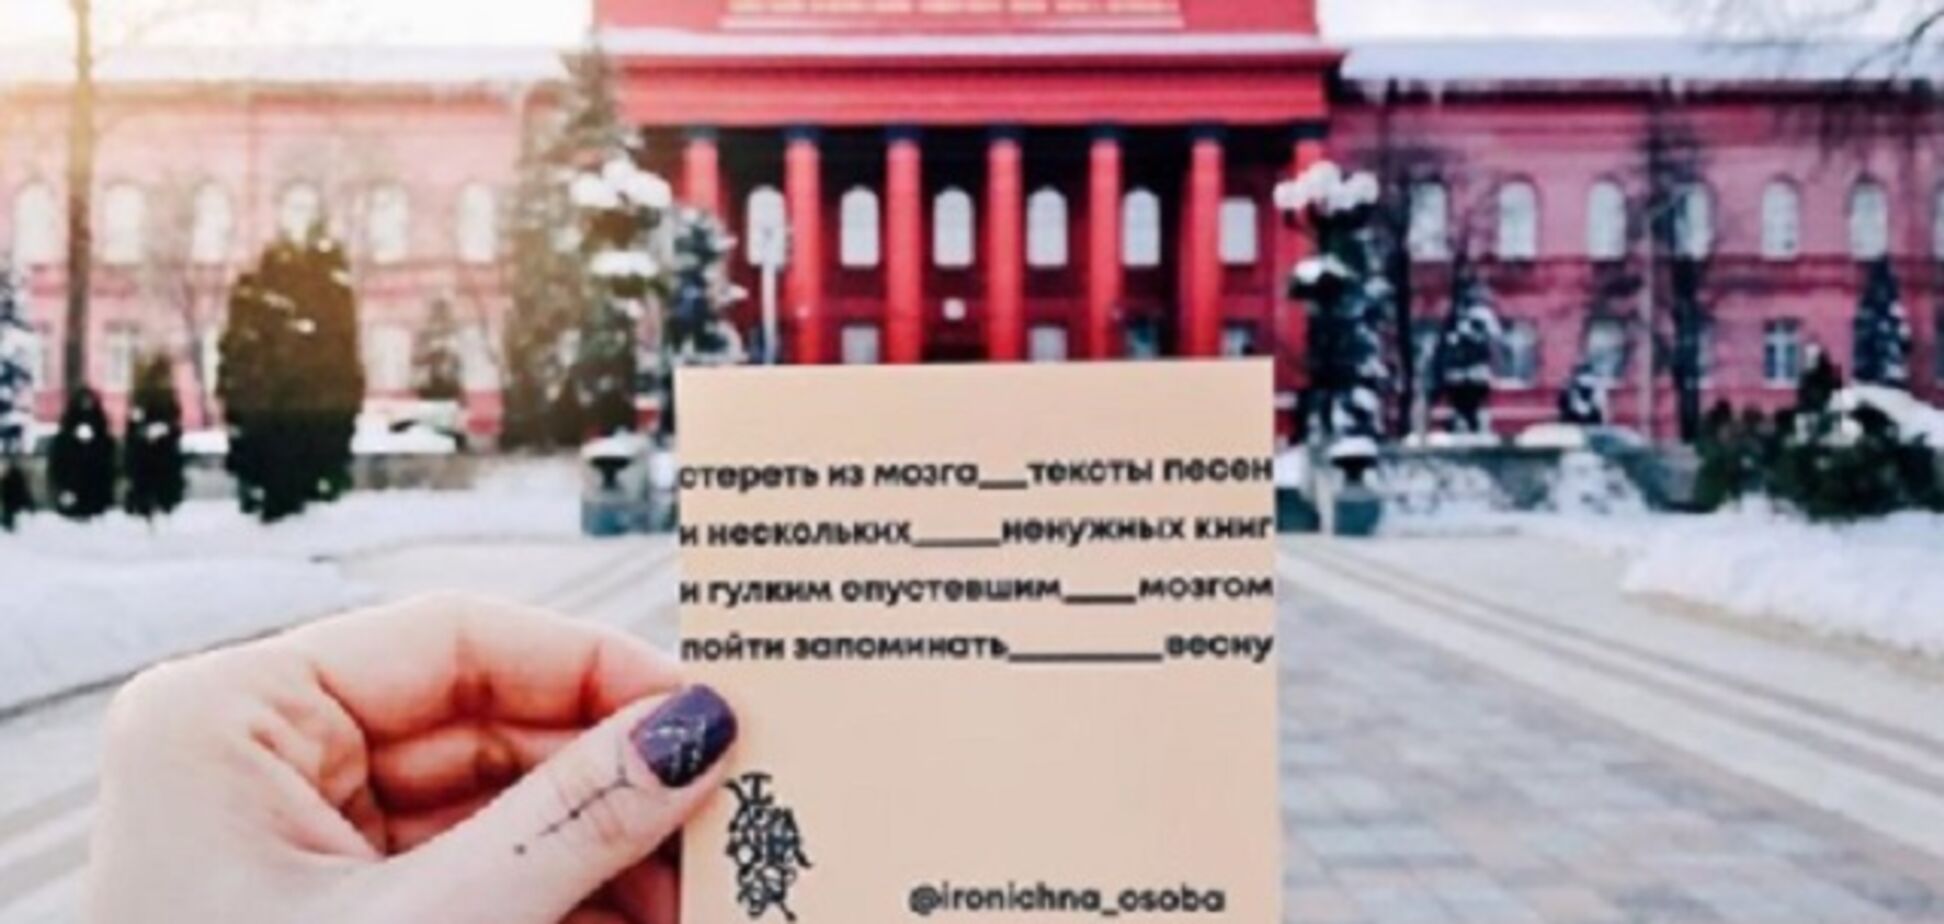 Вірші і Київ: в Instagram з'явився незвичний акаунт